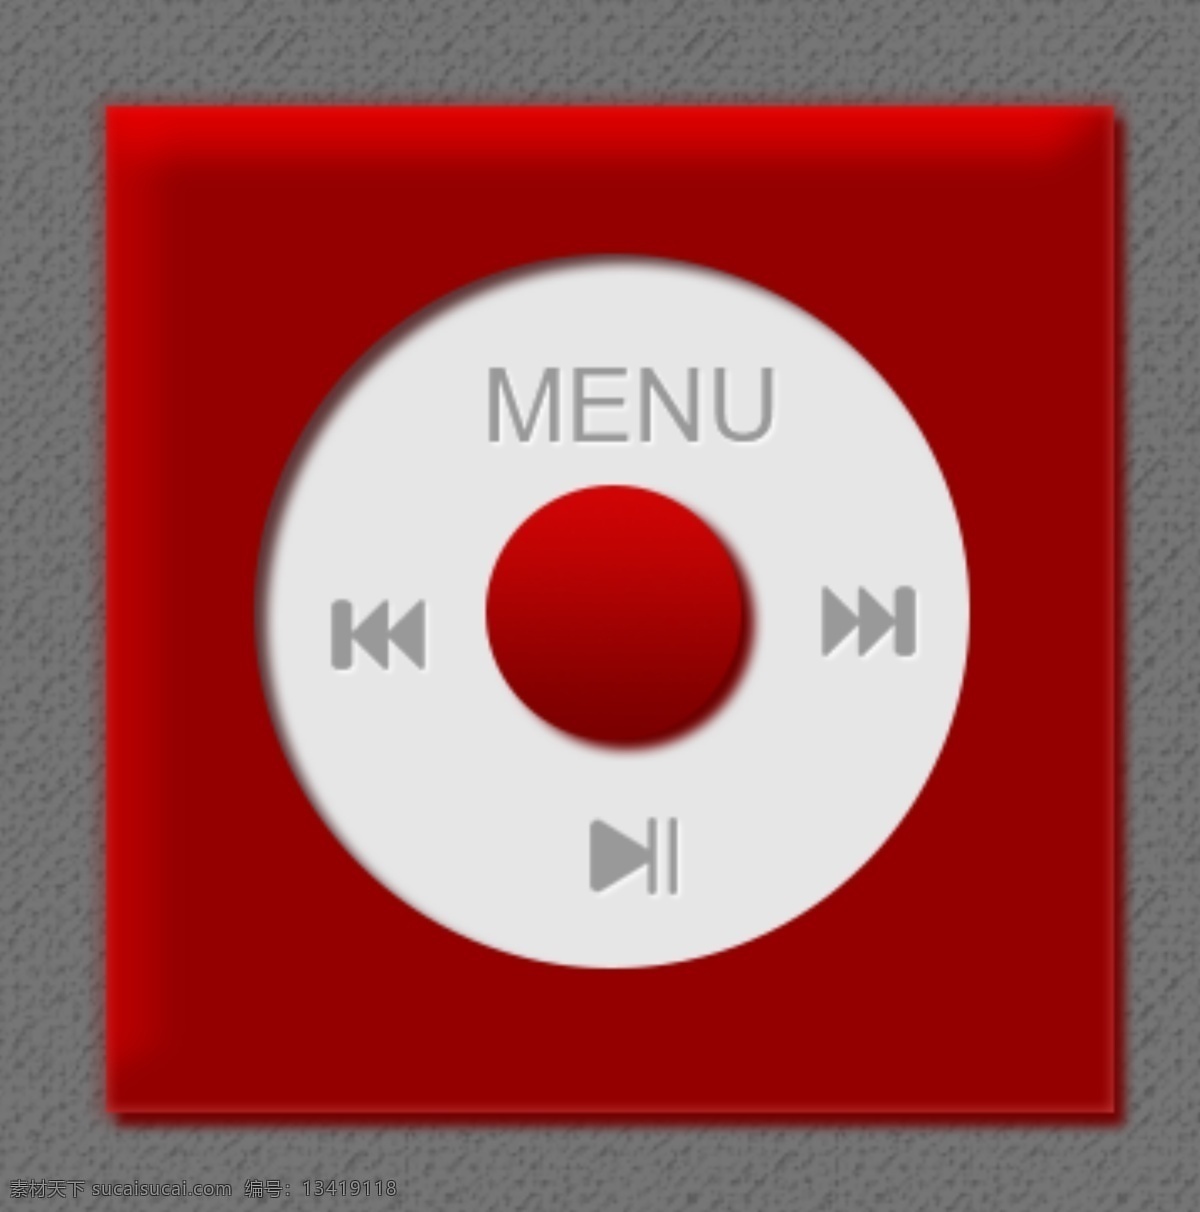 音乐播放器 按钮 红色图标 立体质感 menu